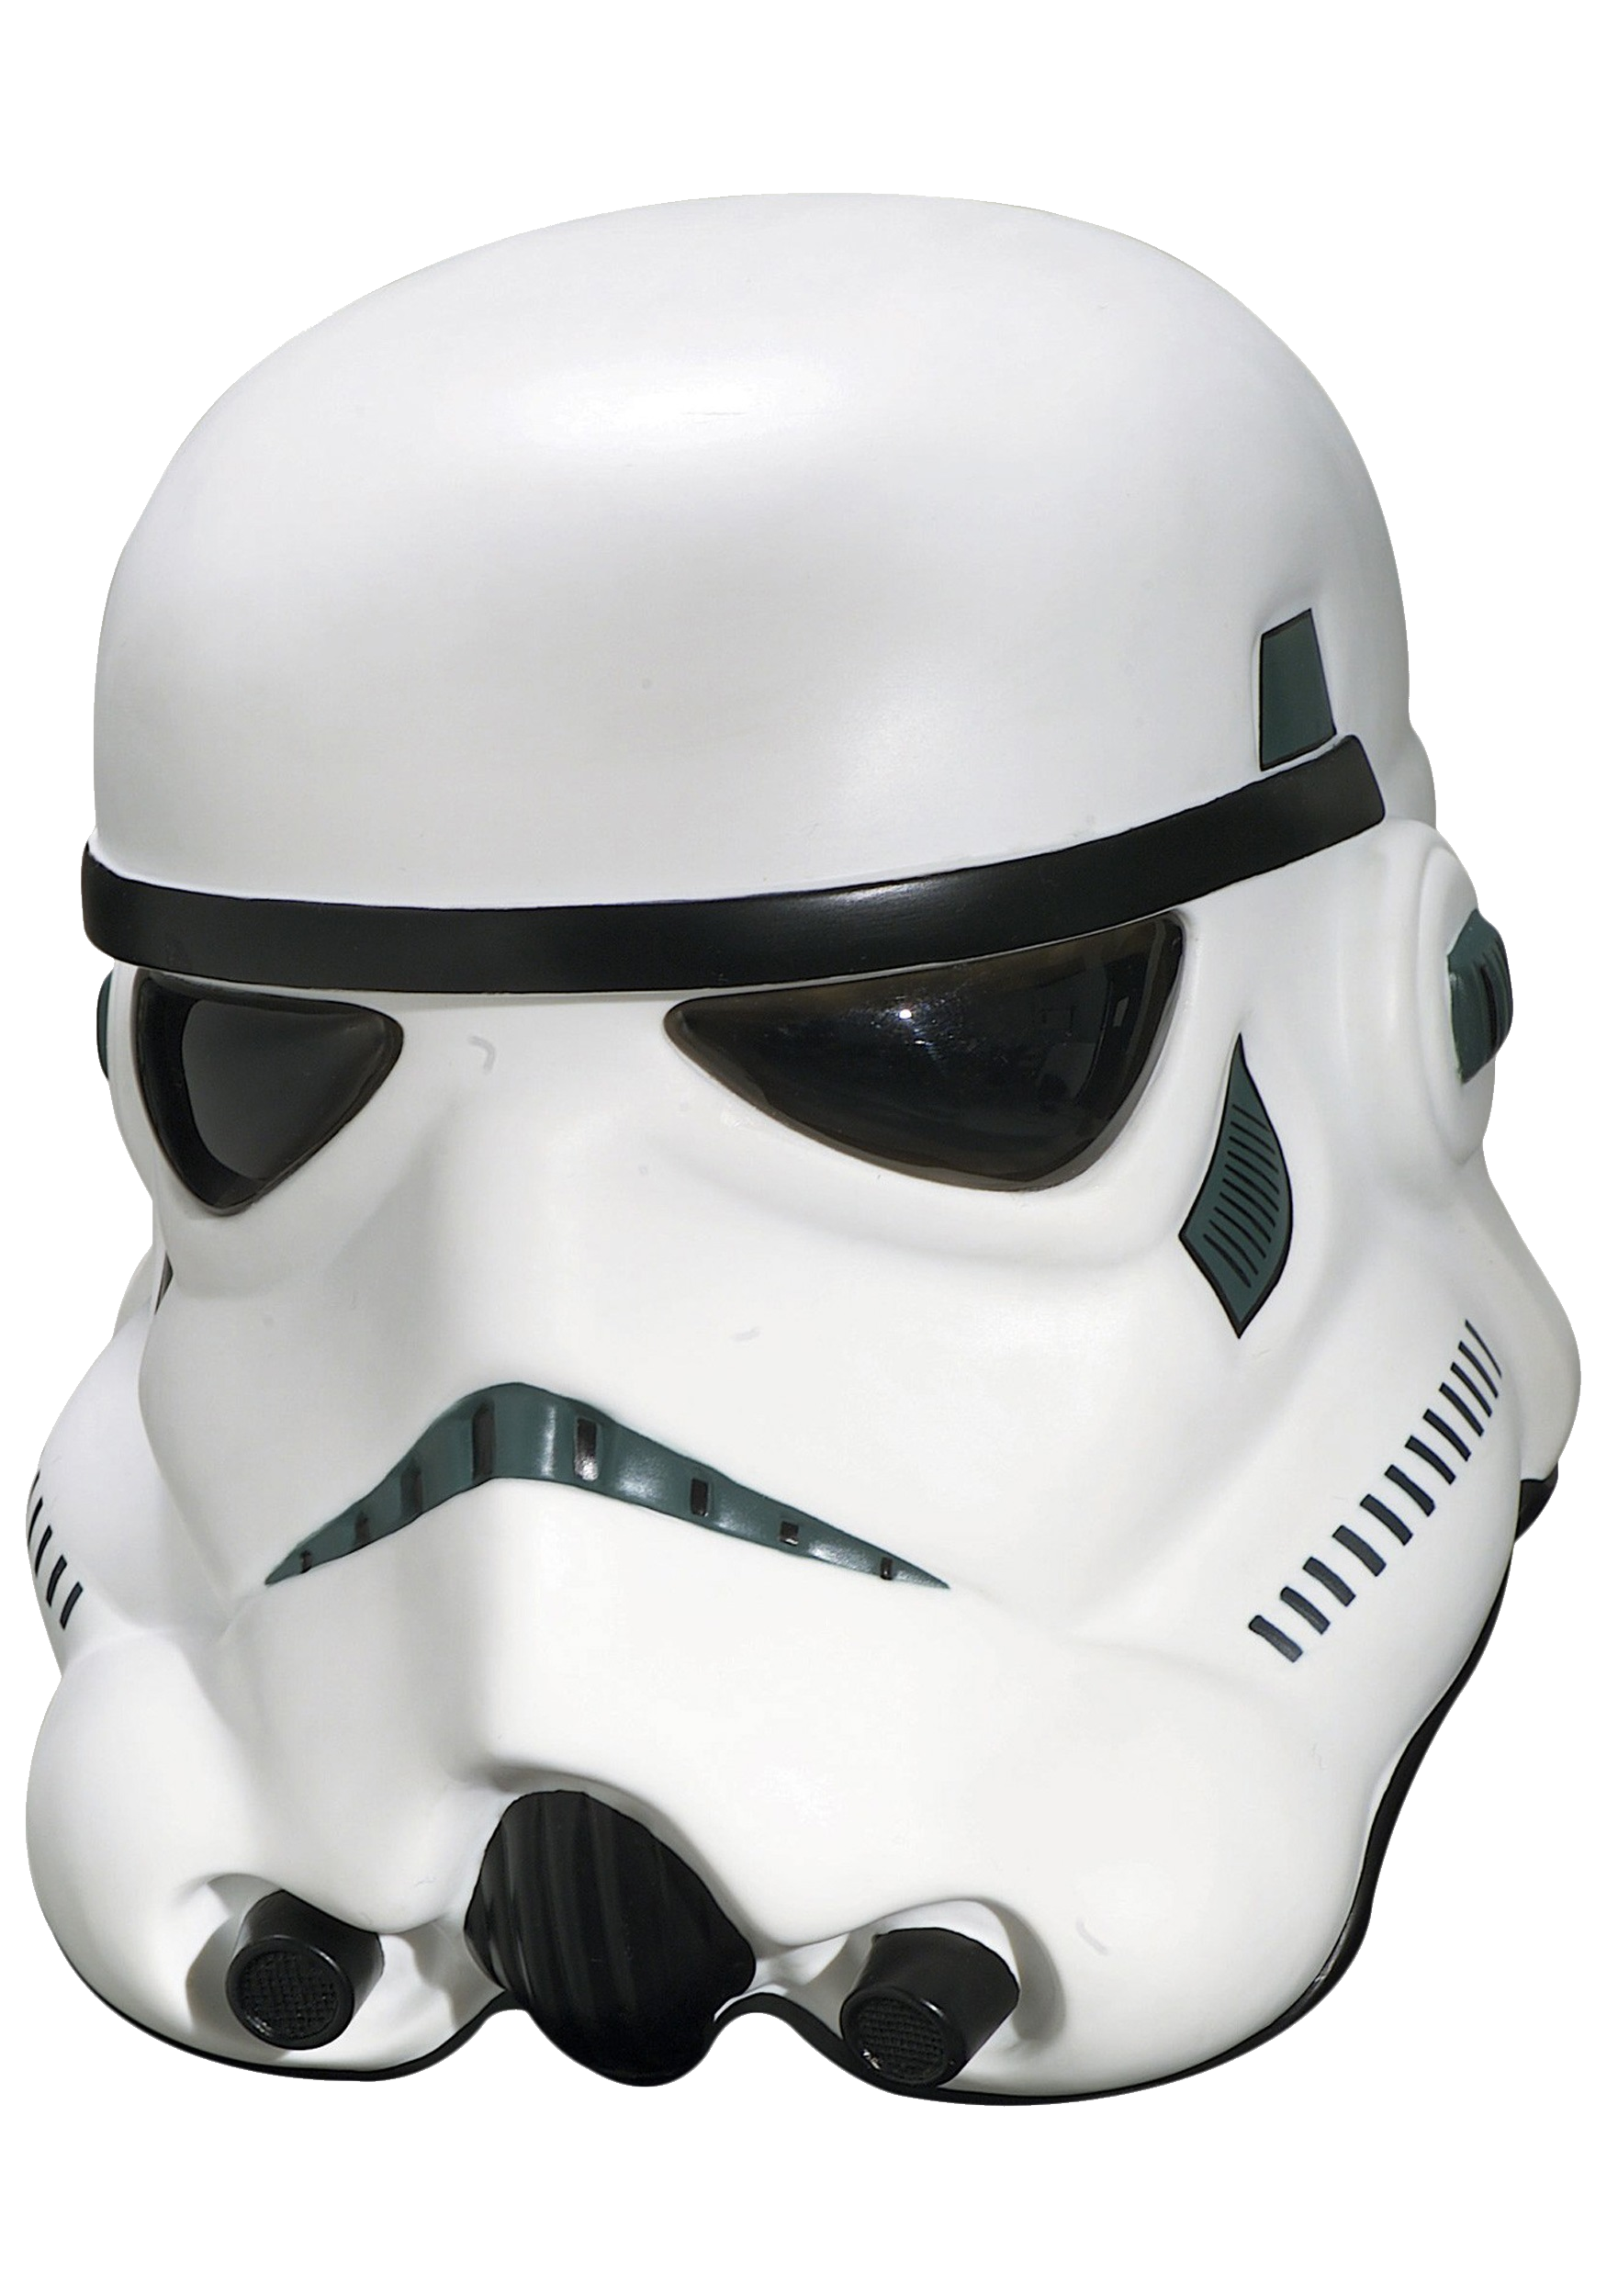 Stormtrooper Mask PNG Transparent Image